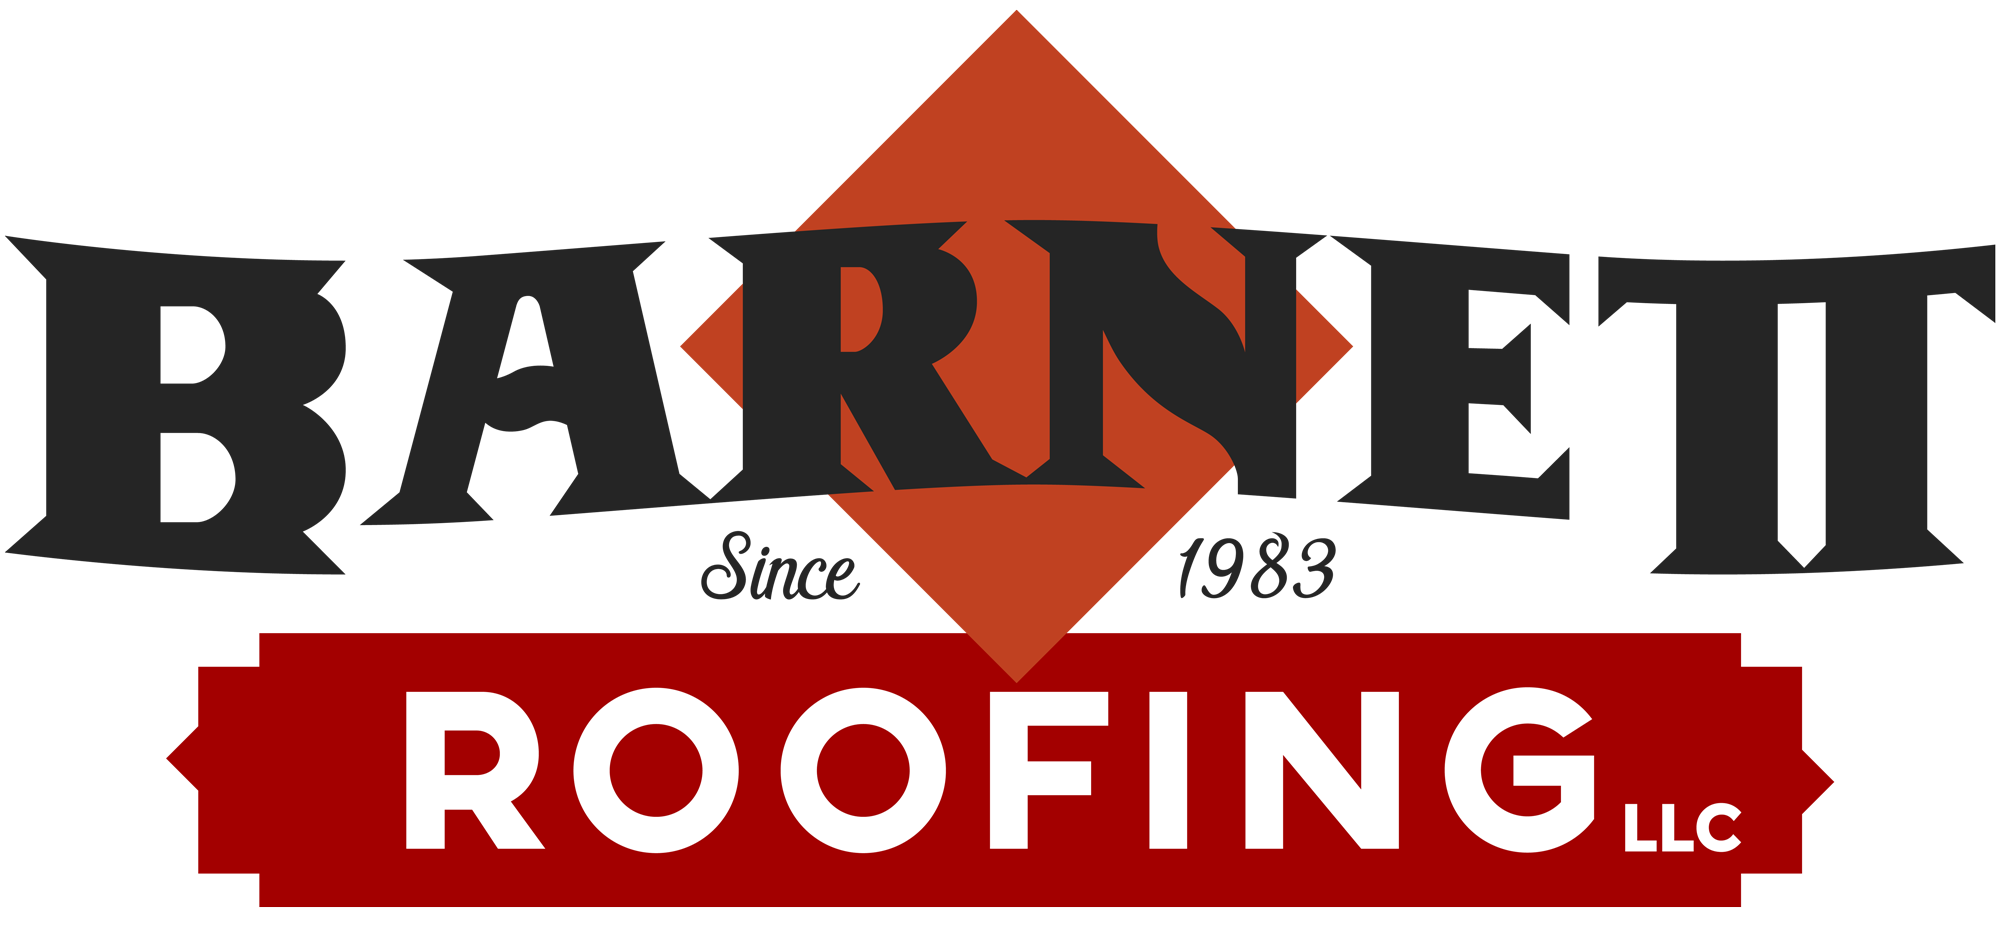 Barnett Roofing | Moscow Idaho Area